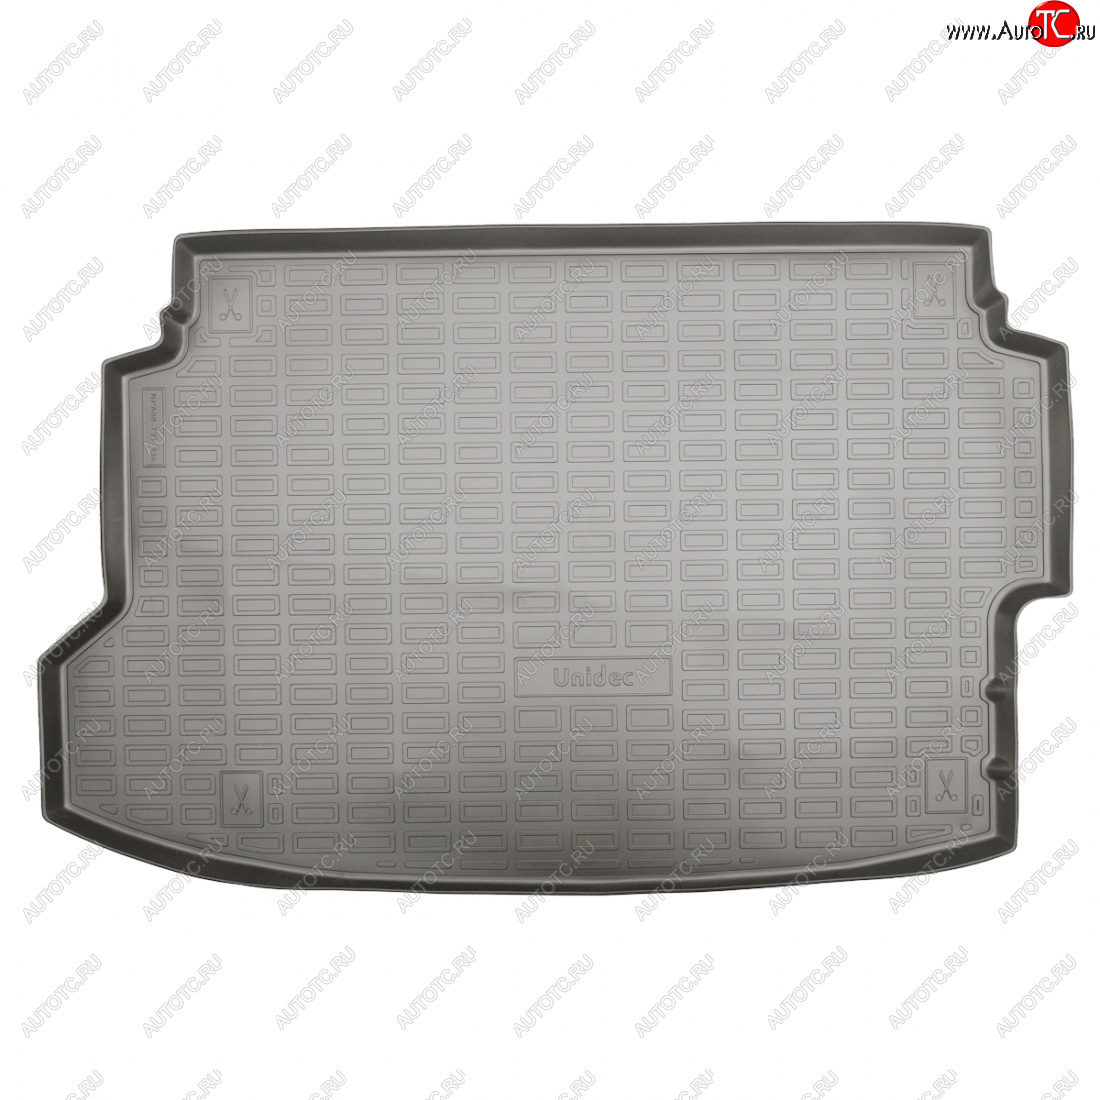 1 979 р. Коврик в багажник (с фальшполом, без сабвуфера) Norplast Unidec  Hyundai Bayon  BC3 (2021-2024) (Серый)